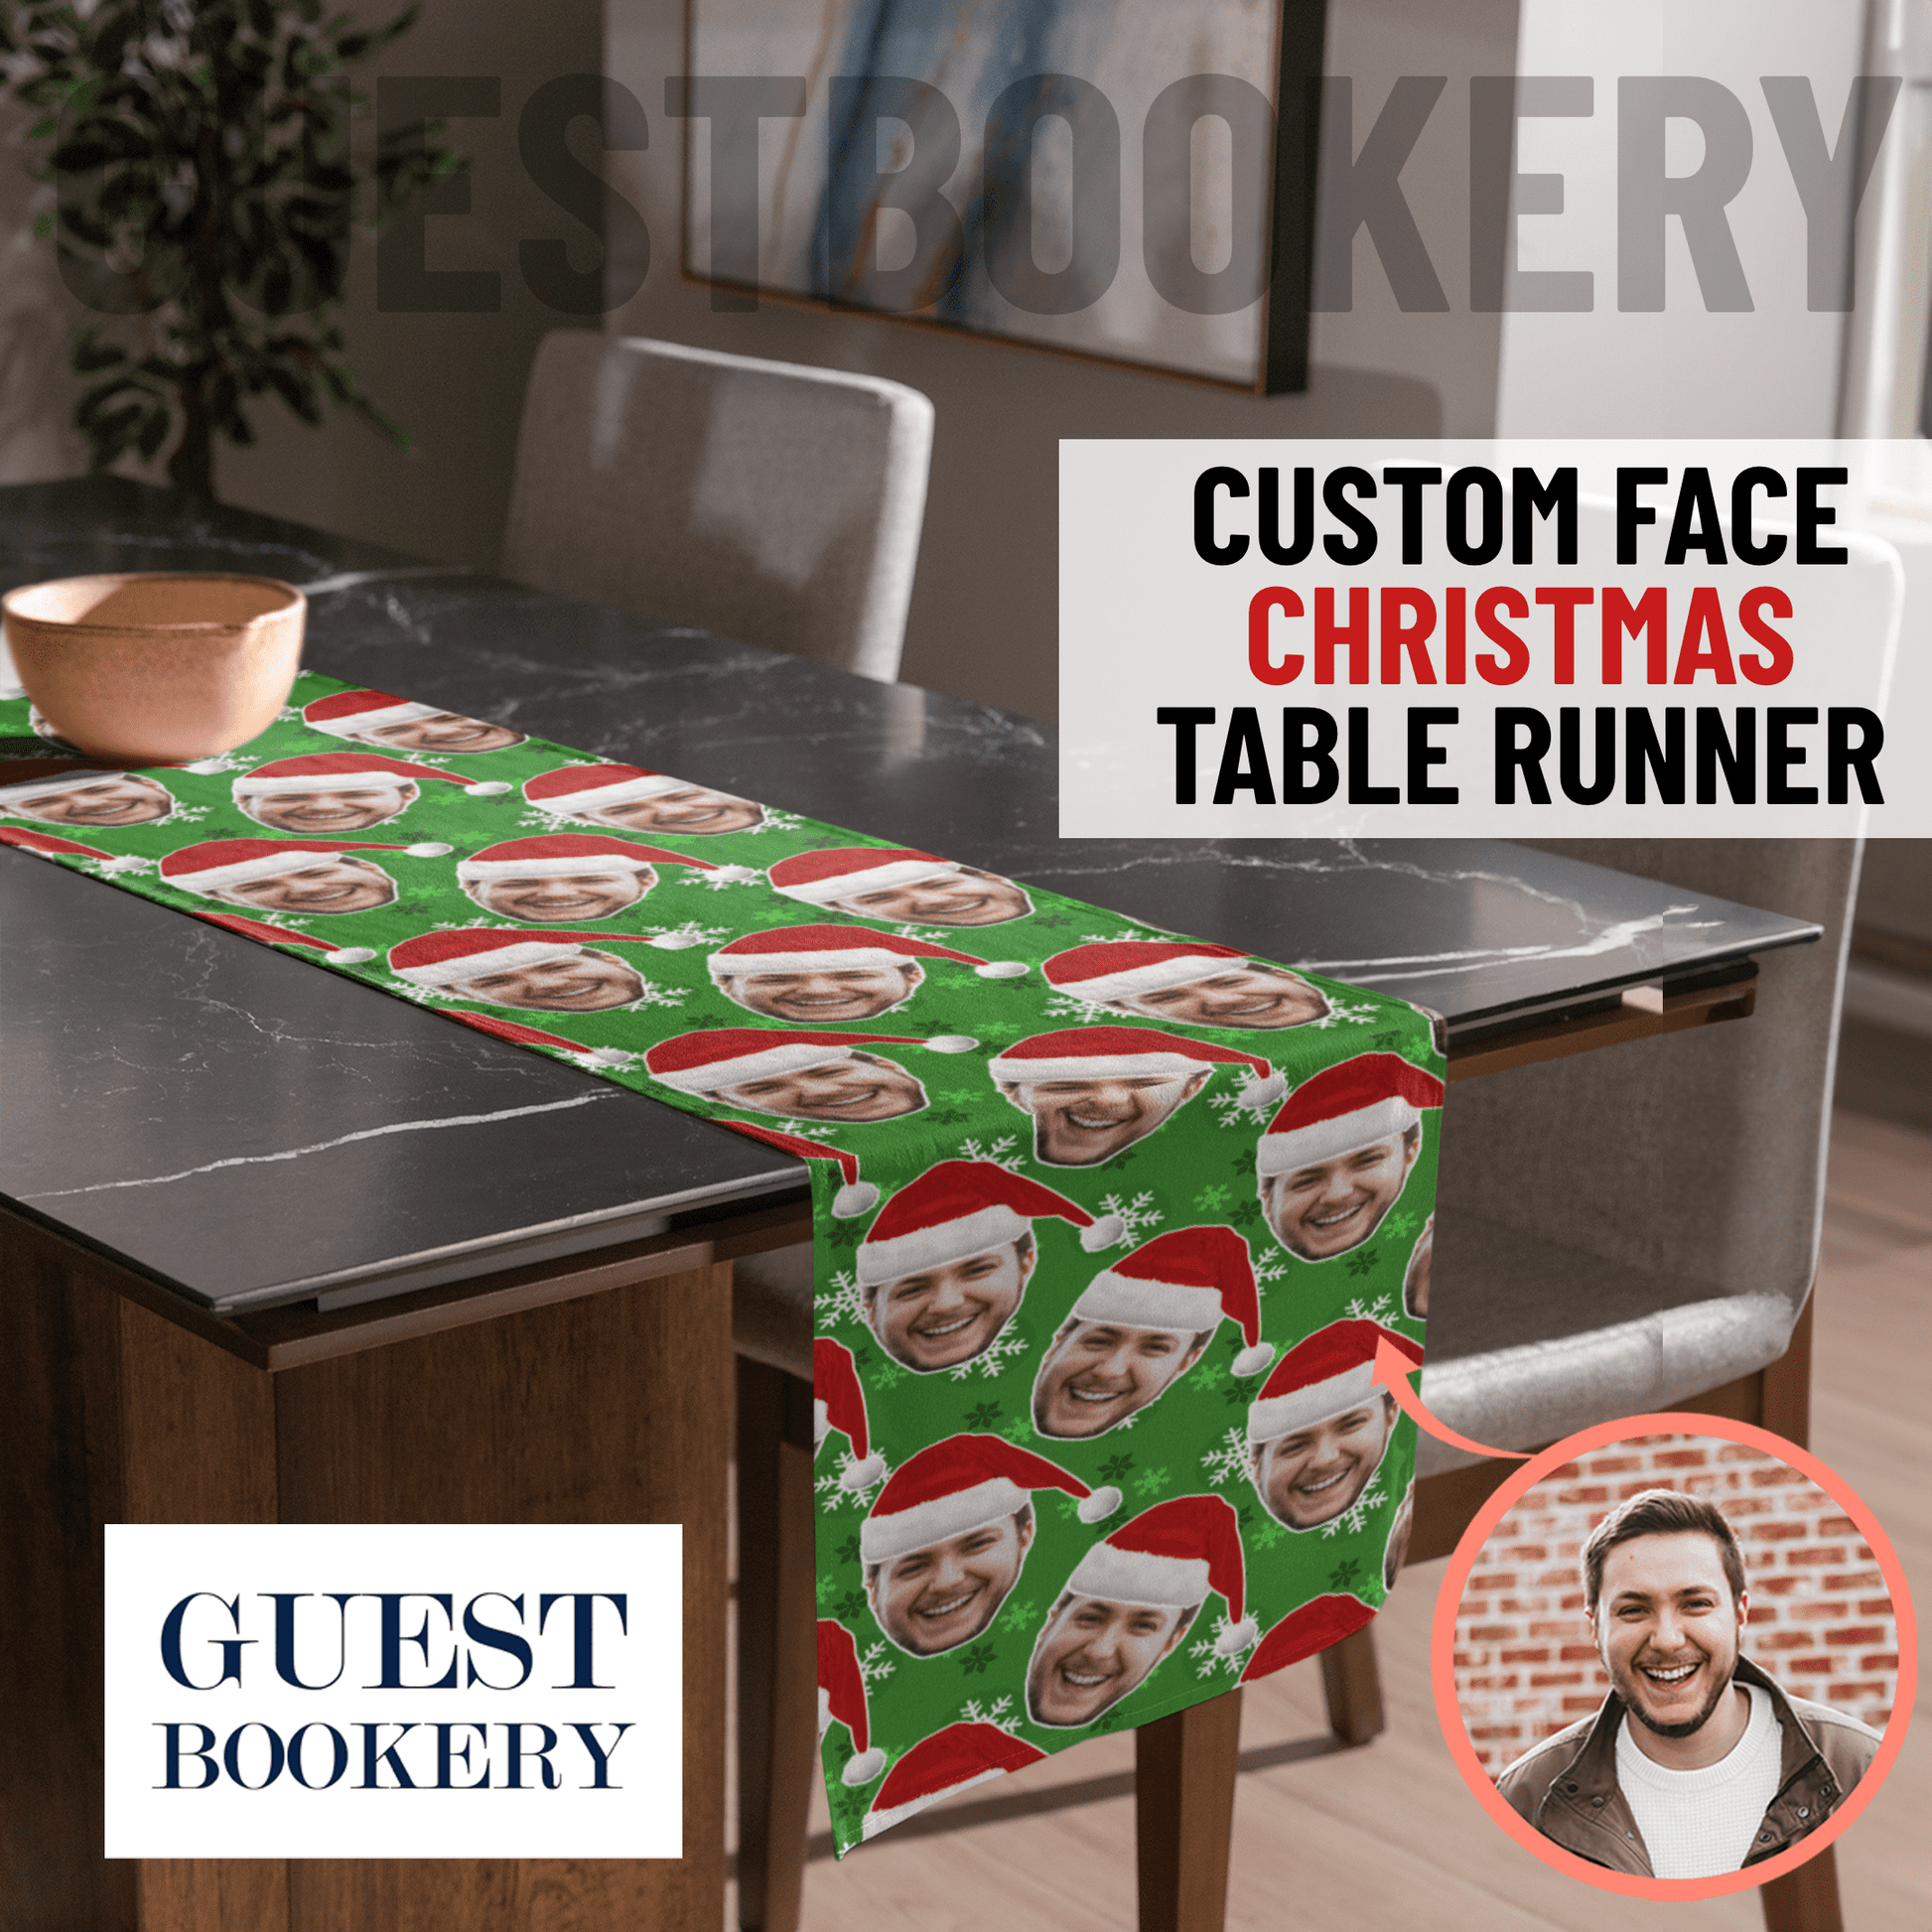 Custom Face Christmas Table Runner - Green Snowflake Pattern